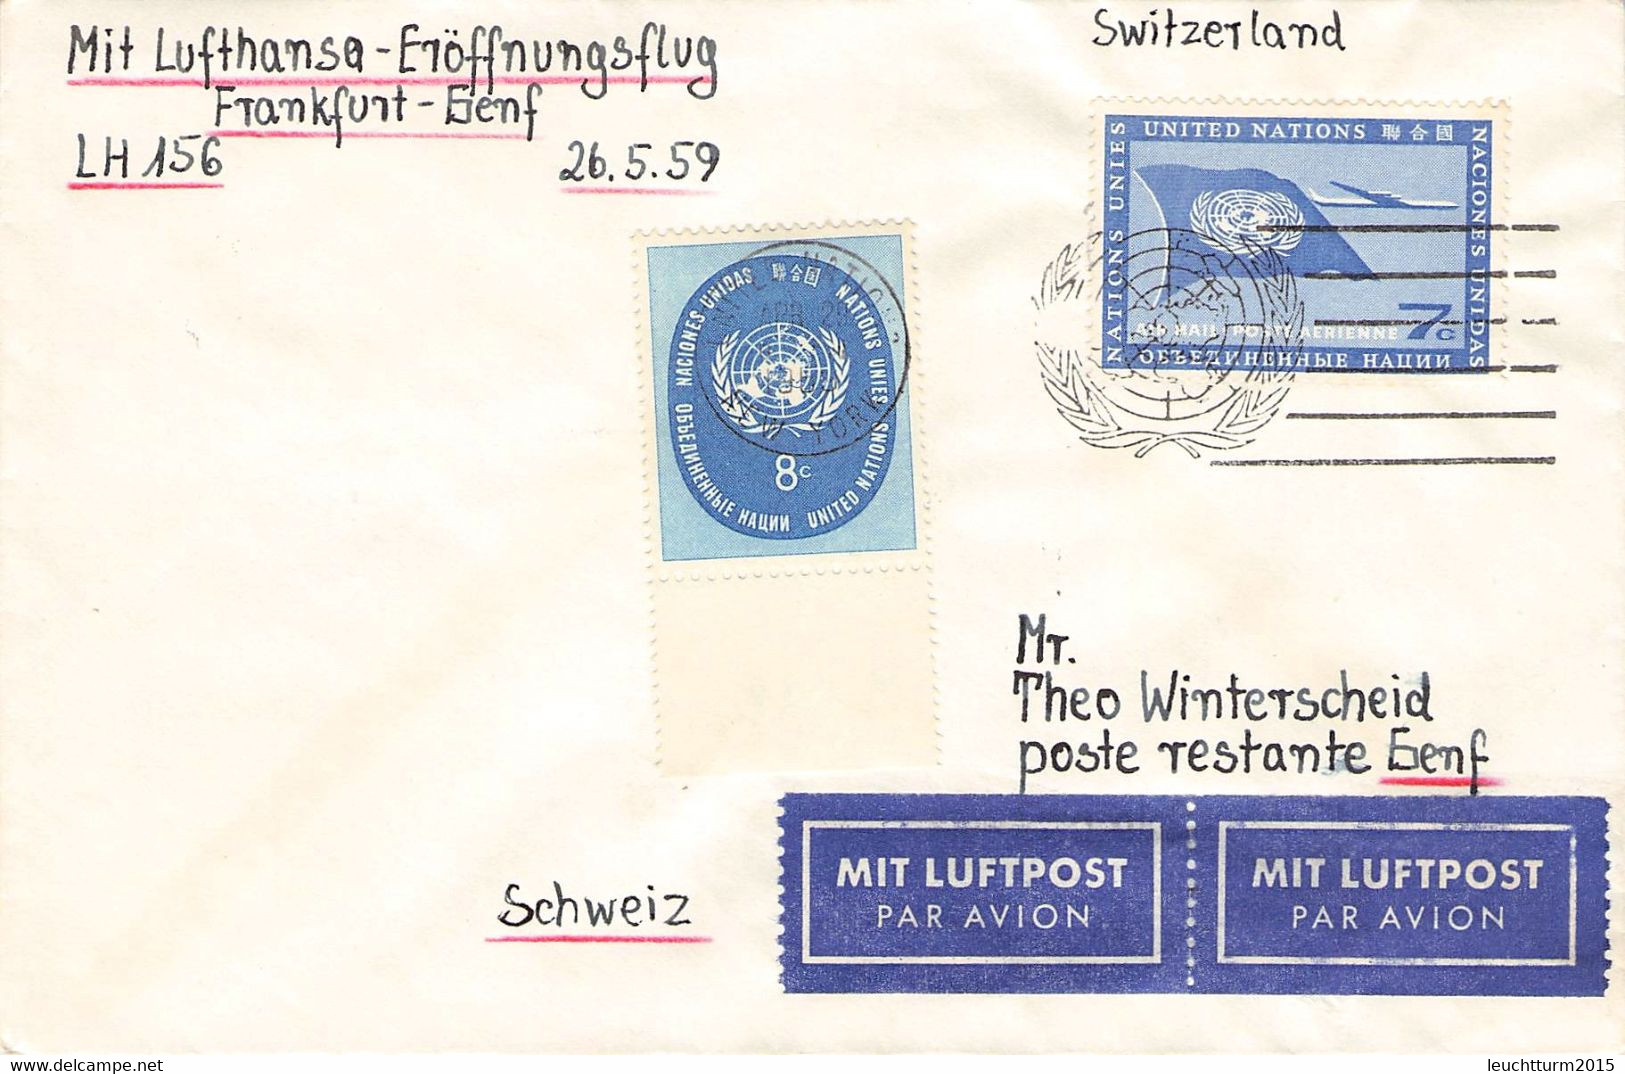 UNITED NATIONS - FIRST FLIGHT LH156 FRANKFURT - GENF 26.5.1959 / ZL81 - Airmail